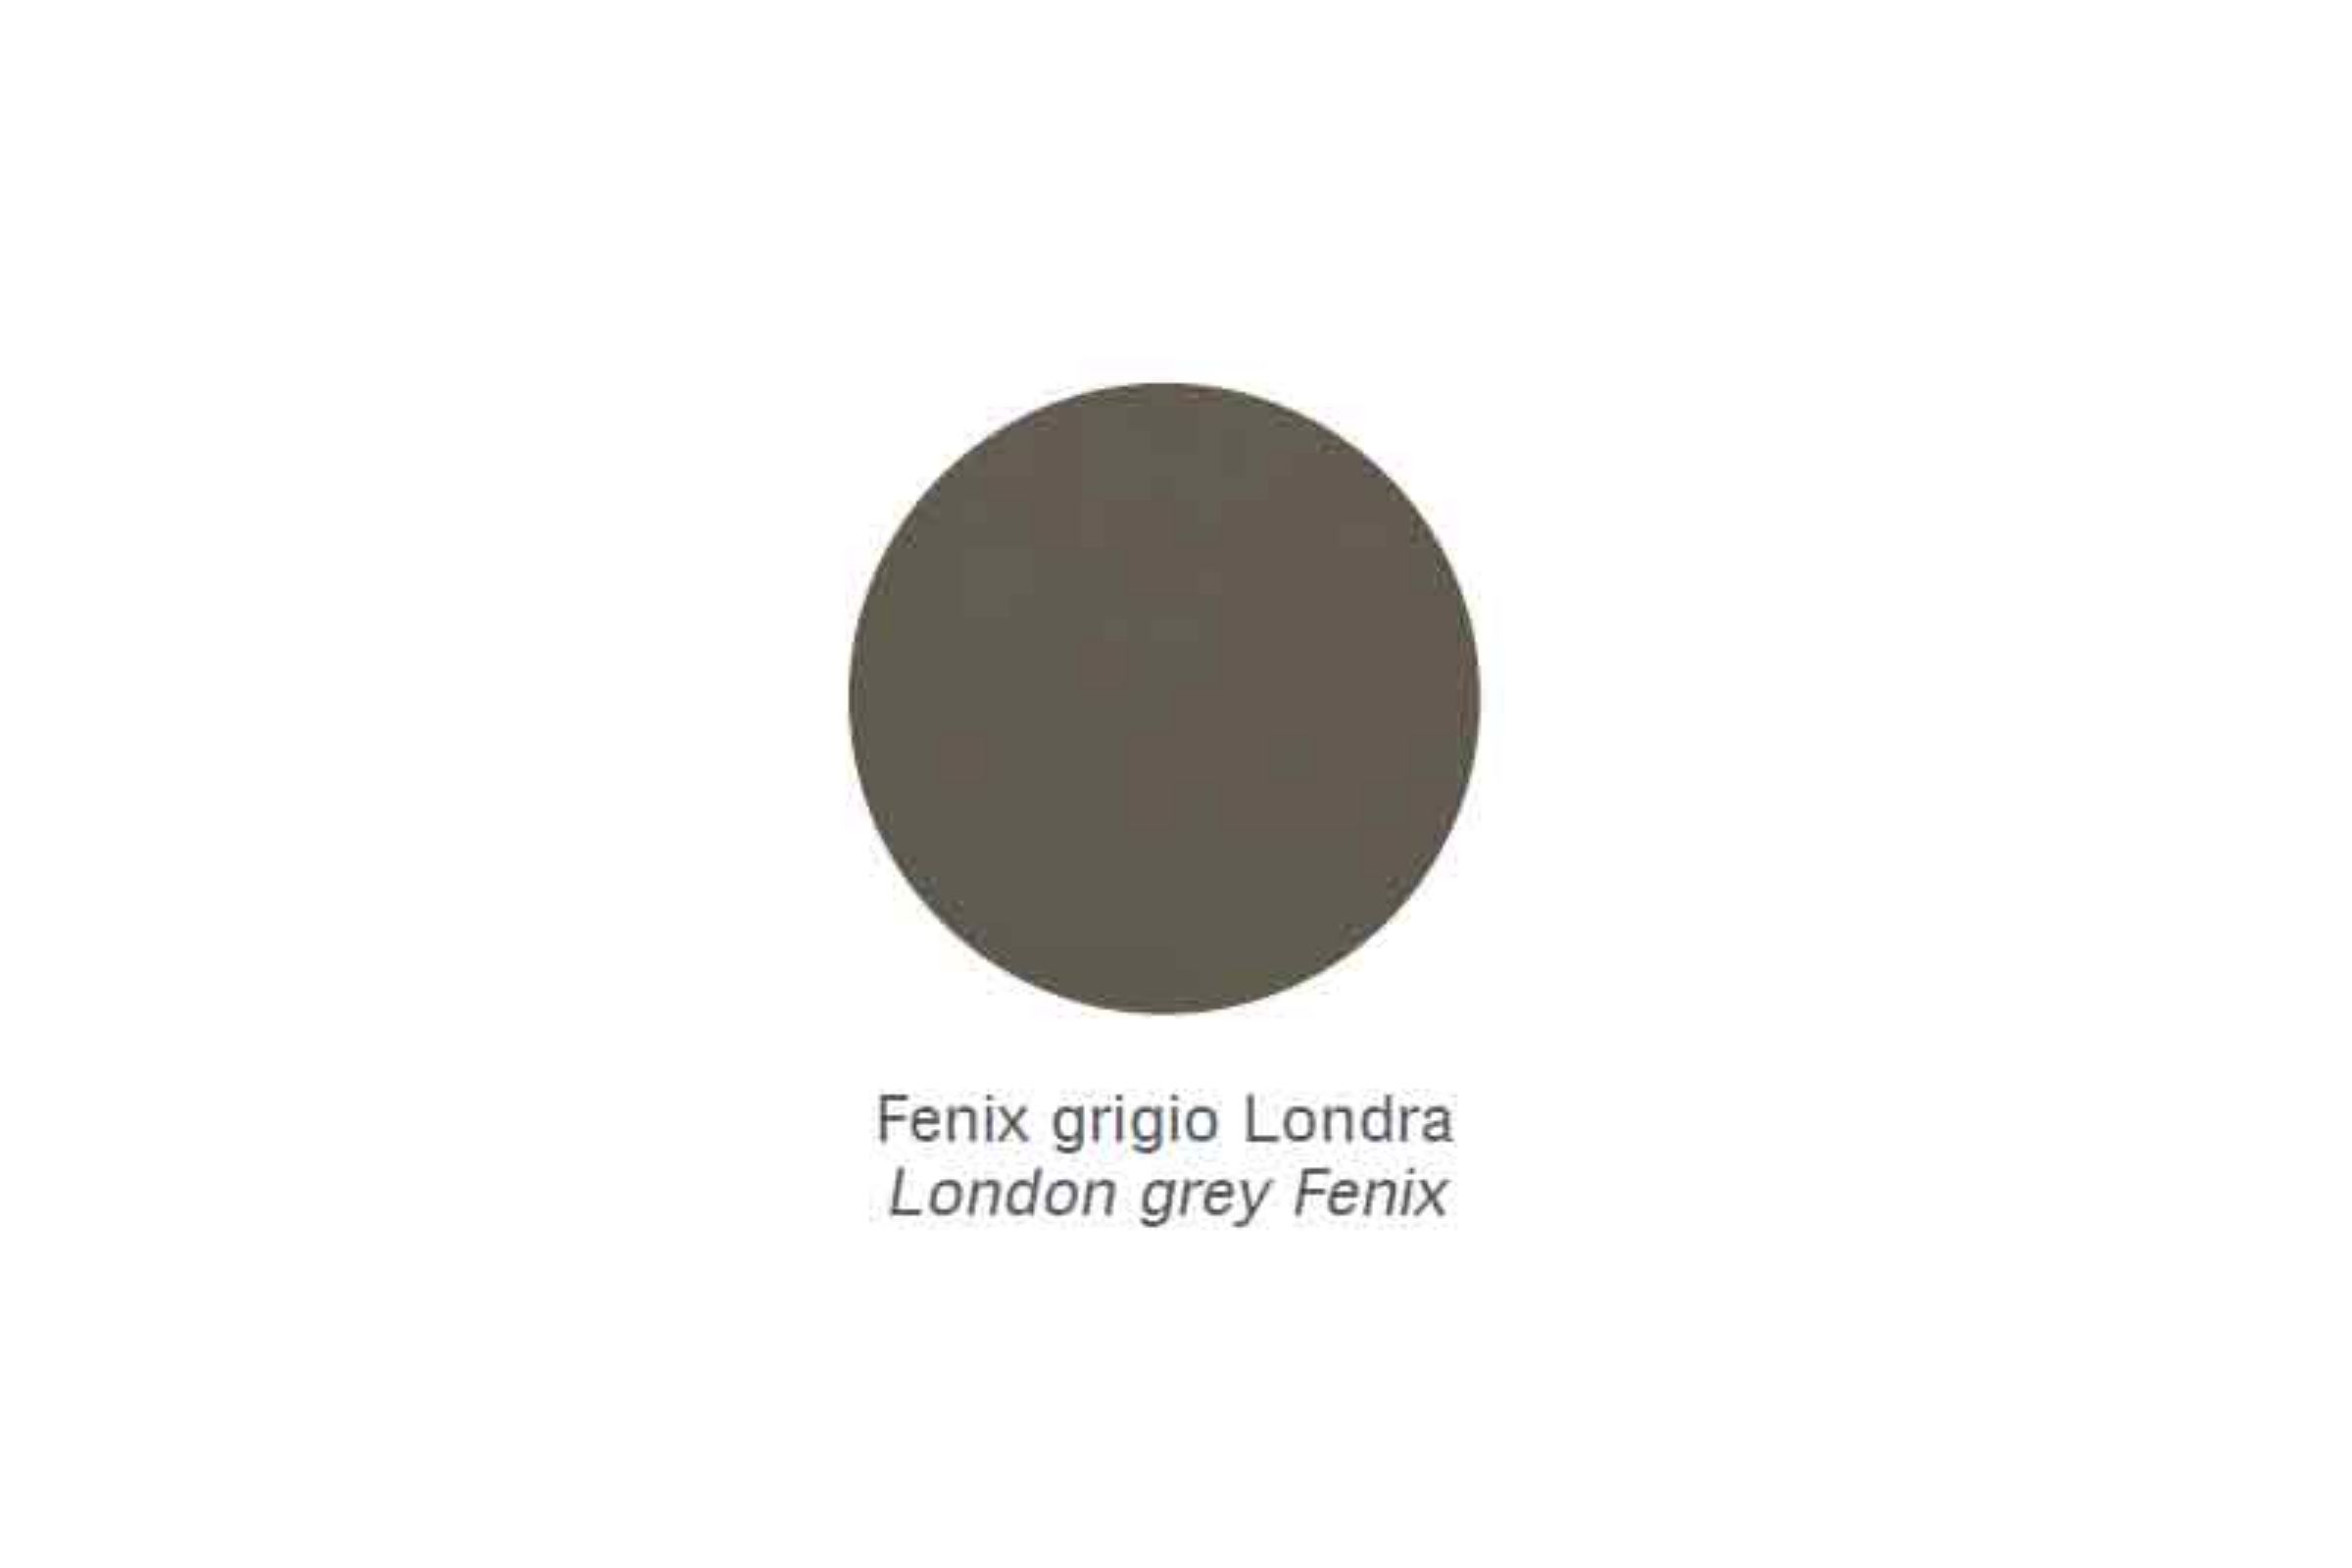 Appendi abiti “fungo” Zen - Appendi abiti “fungo” Zen Fenix grigio Londra